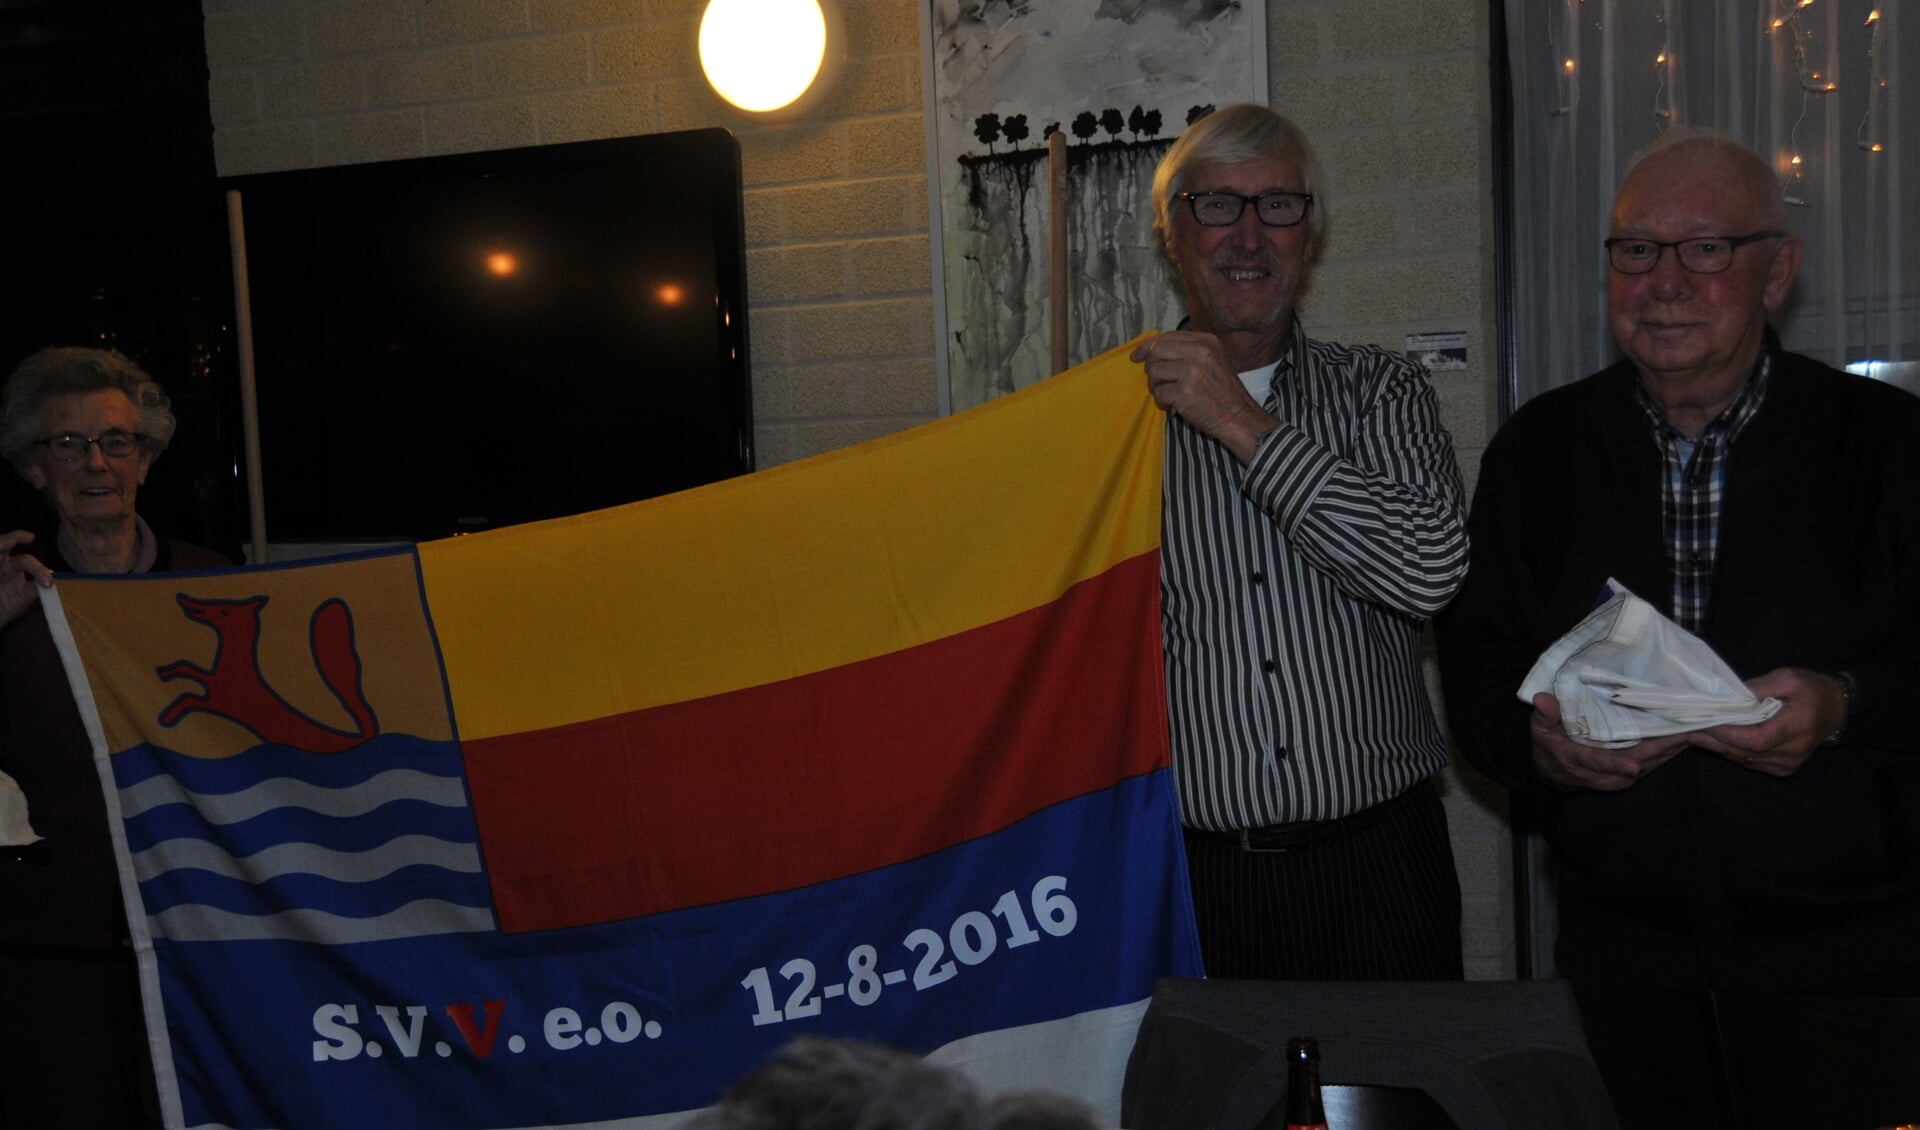 Voorzitter Jos Hommel en Anna Stoutjesdijk (zij is het langst lid) ontvouwen de nieuwe vlag. Rechts houdt bestuurslid Gerrit de Gast de oude Anbo-vlag vast.